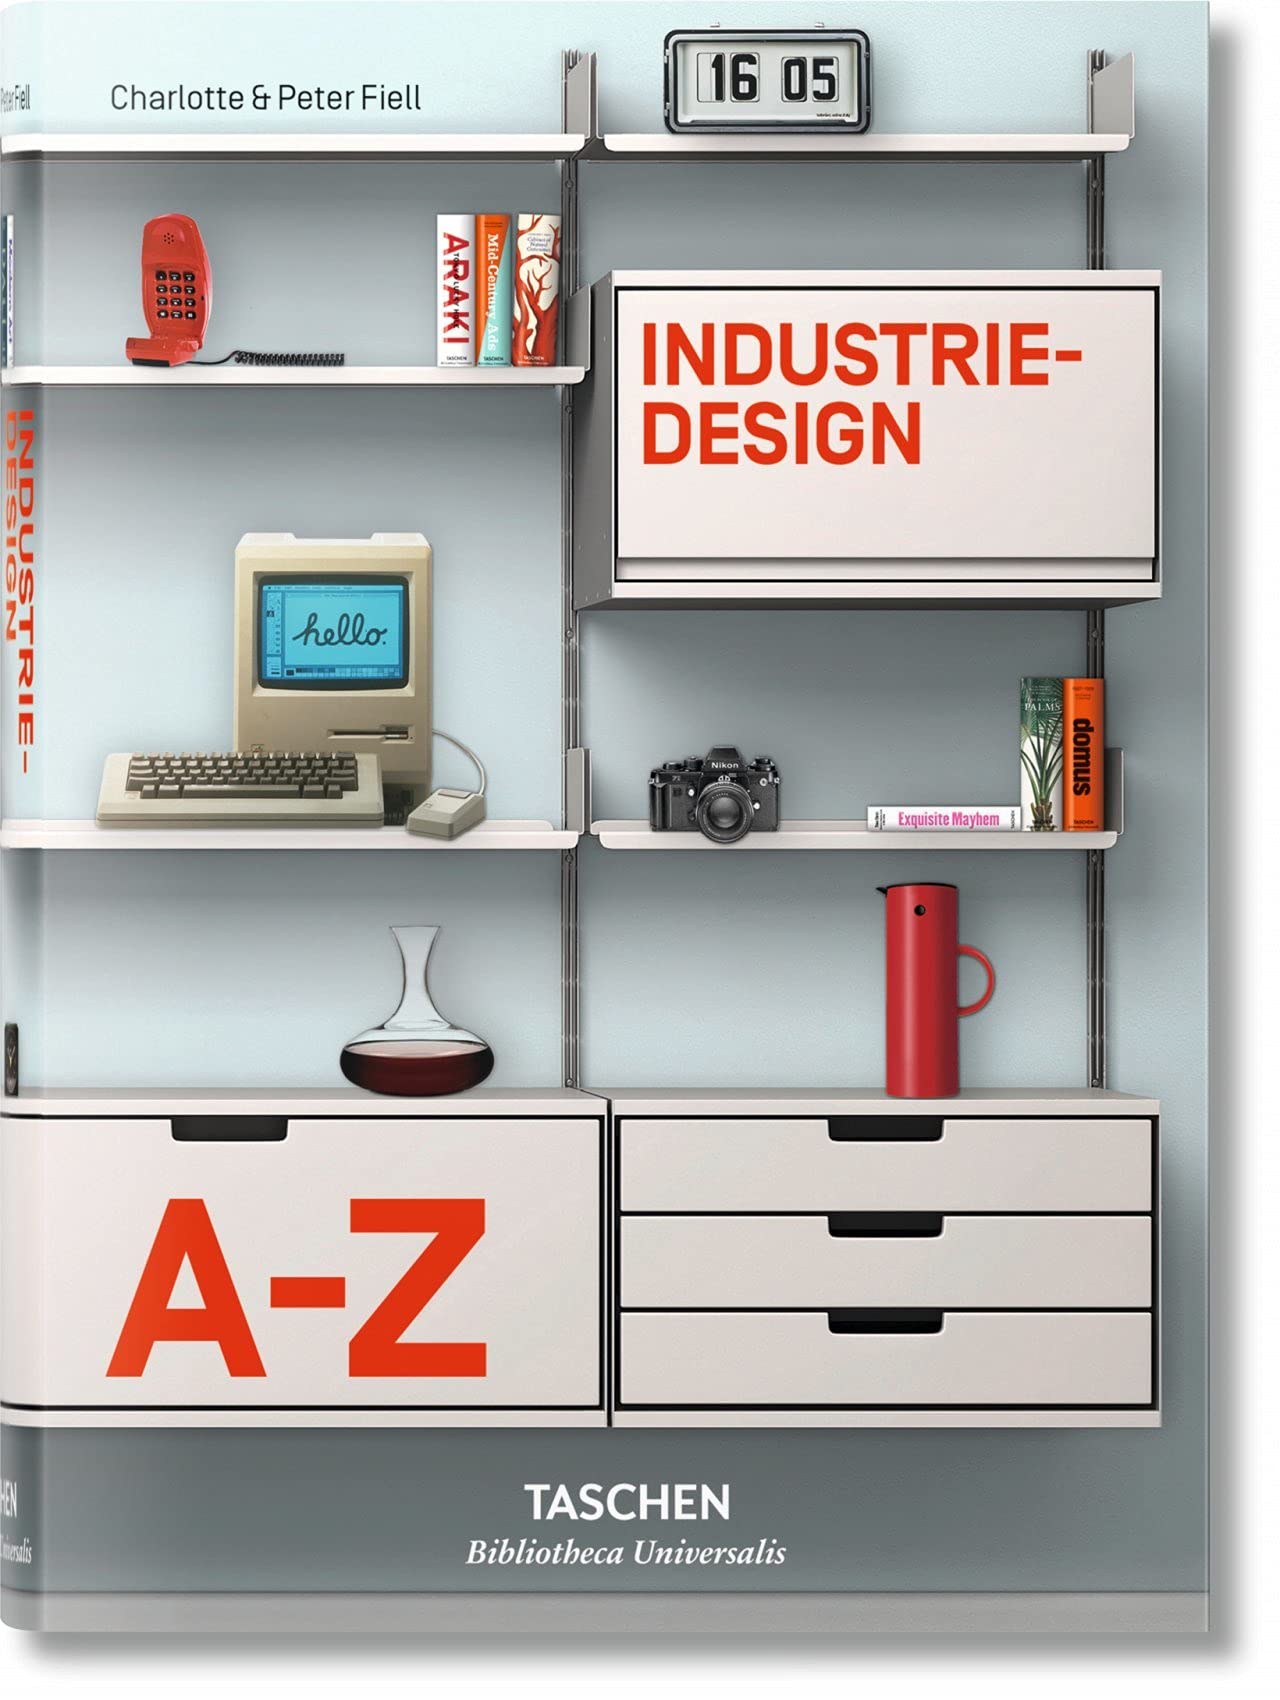 Libri Charlotte Fiell / Peter Fiell - Industriedesign A-Z (German Edition) NUOVO SIGILLATO SUBITO DISPONIBILE